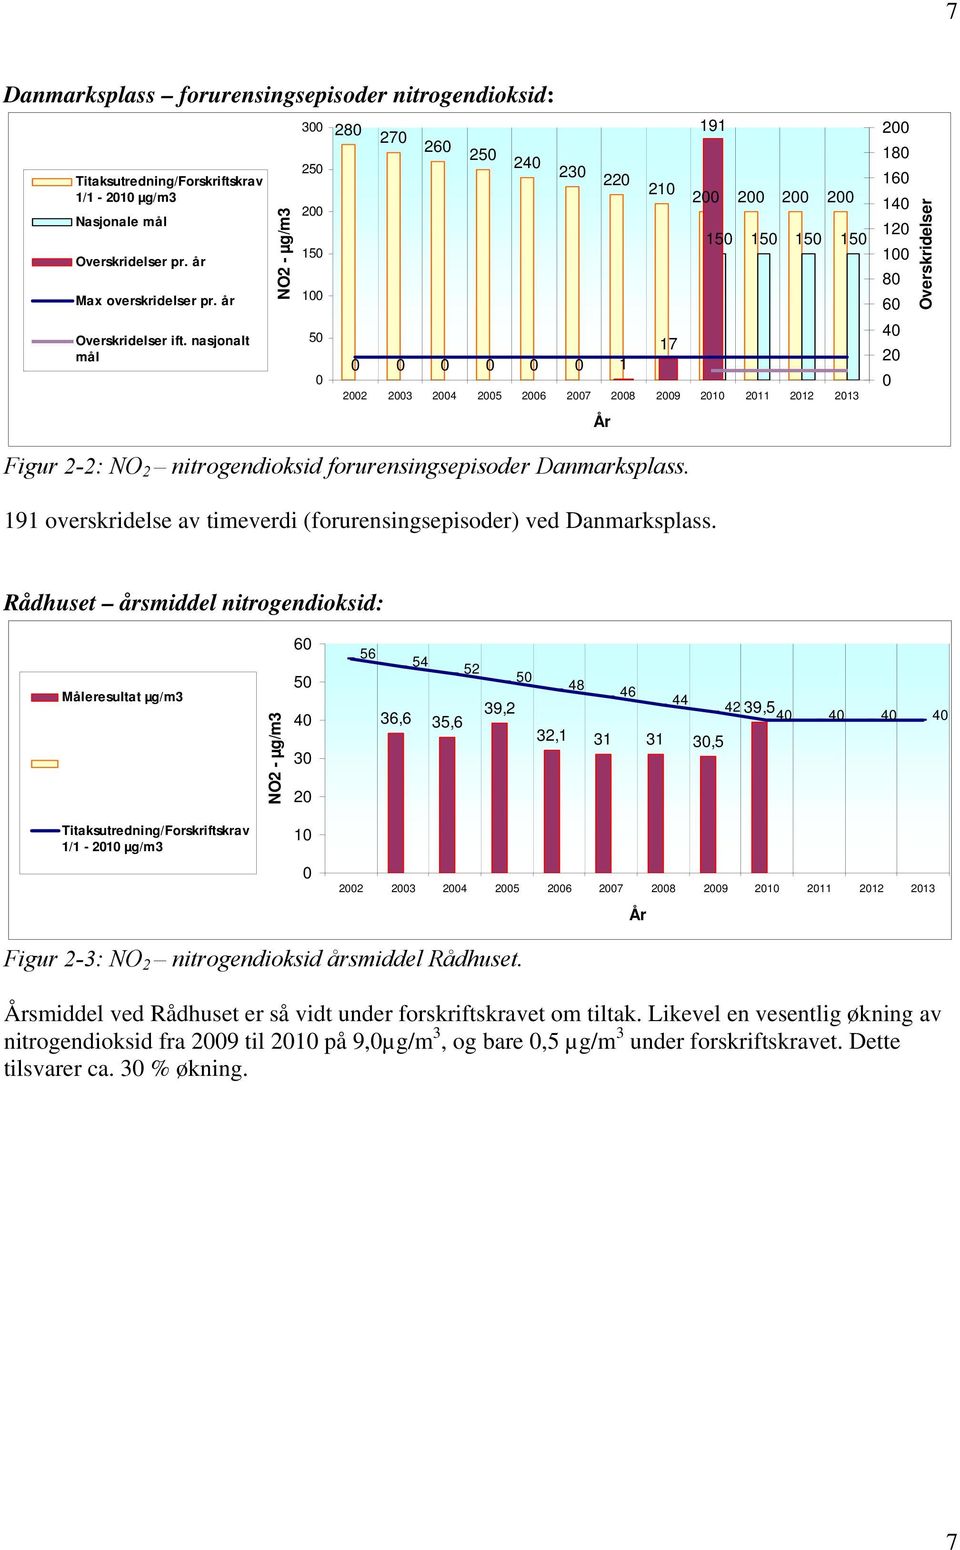 nitrogendioksid forurensingsepisoder Danmarksplass. 191 overskridelse av timeverdi (forurensingsepisoder) ved Danmarksplass.